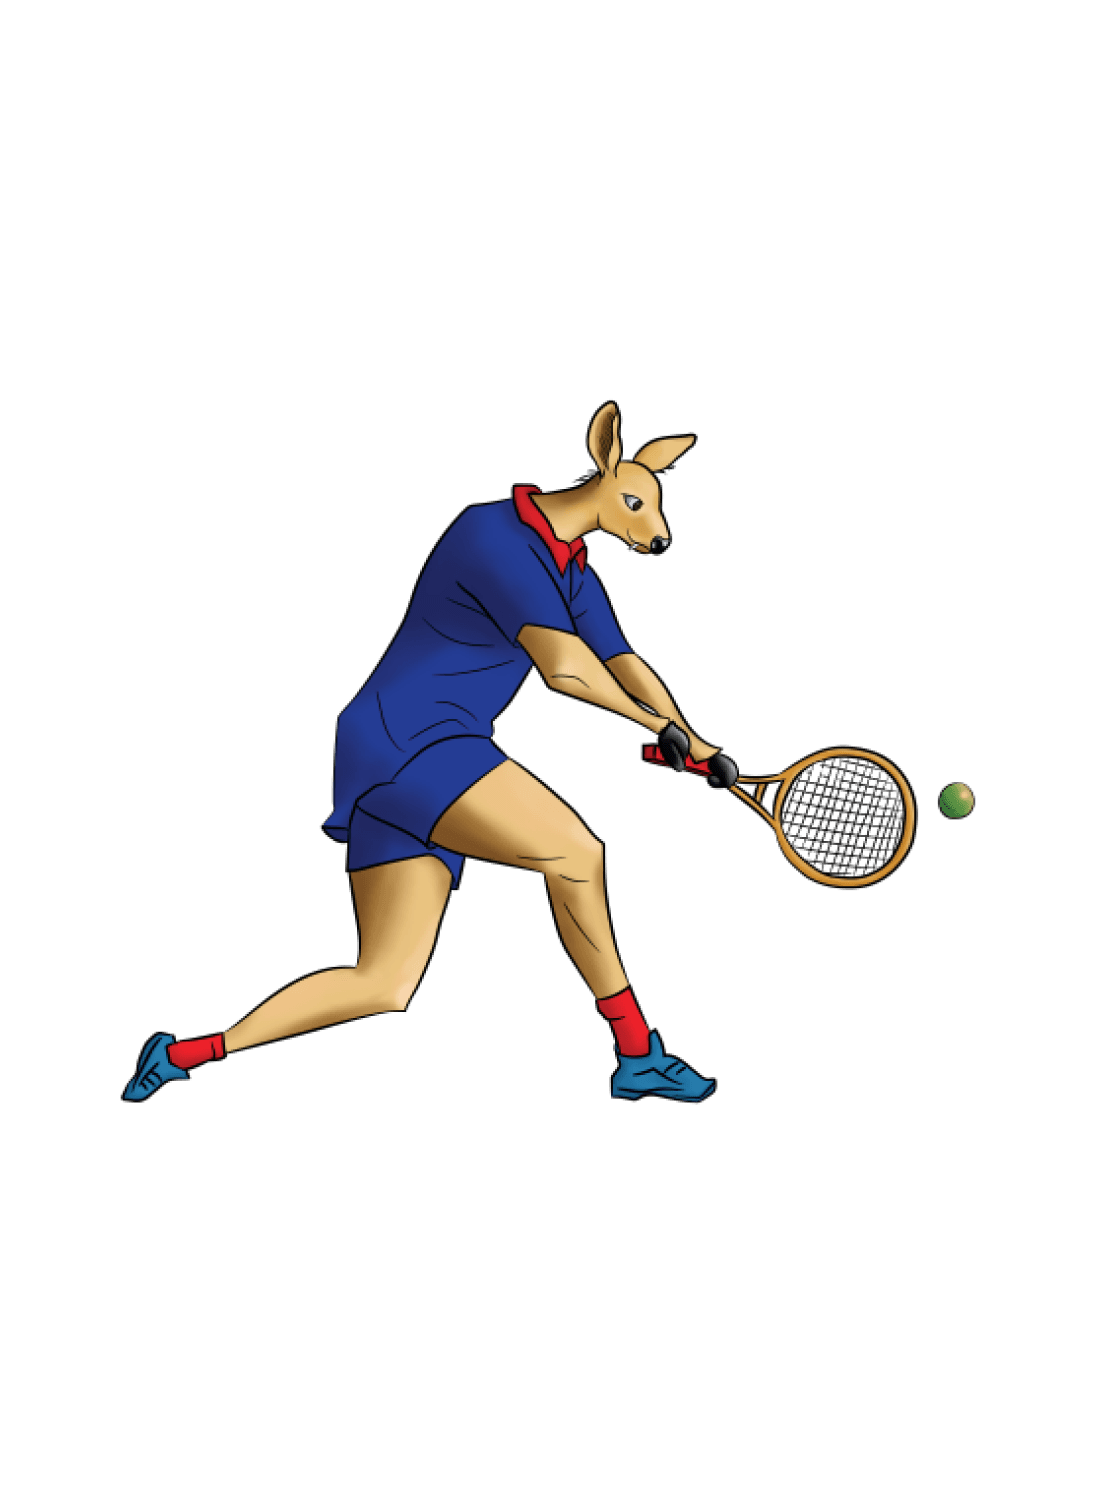 नवौँ राष्ट्रिय खेलकुद : टेनिस महिला डबल्सतर्फ बागमती र आर्मी फाइनलमा